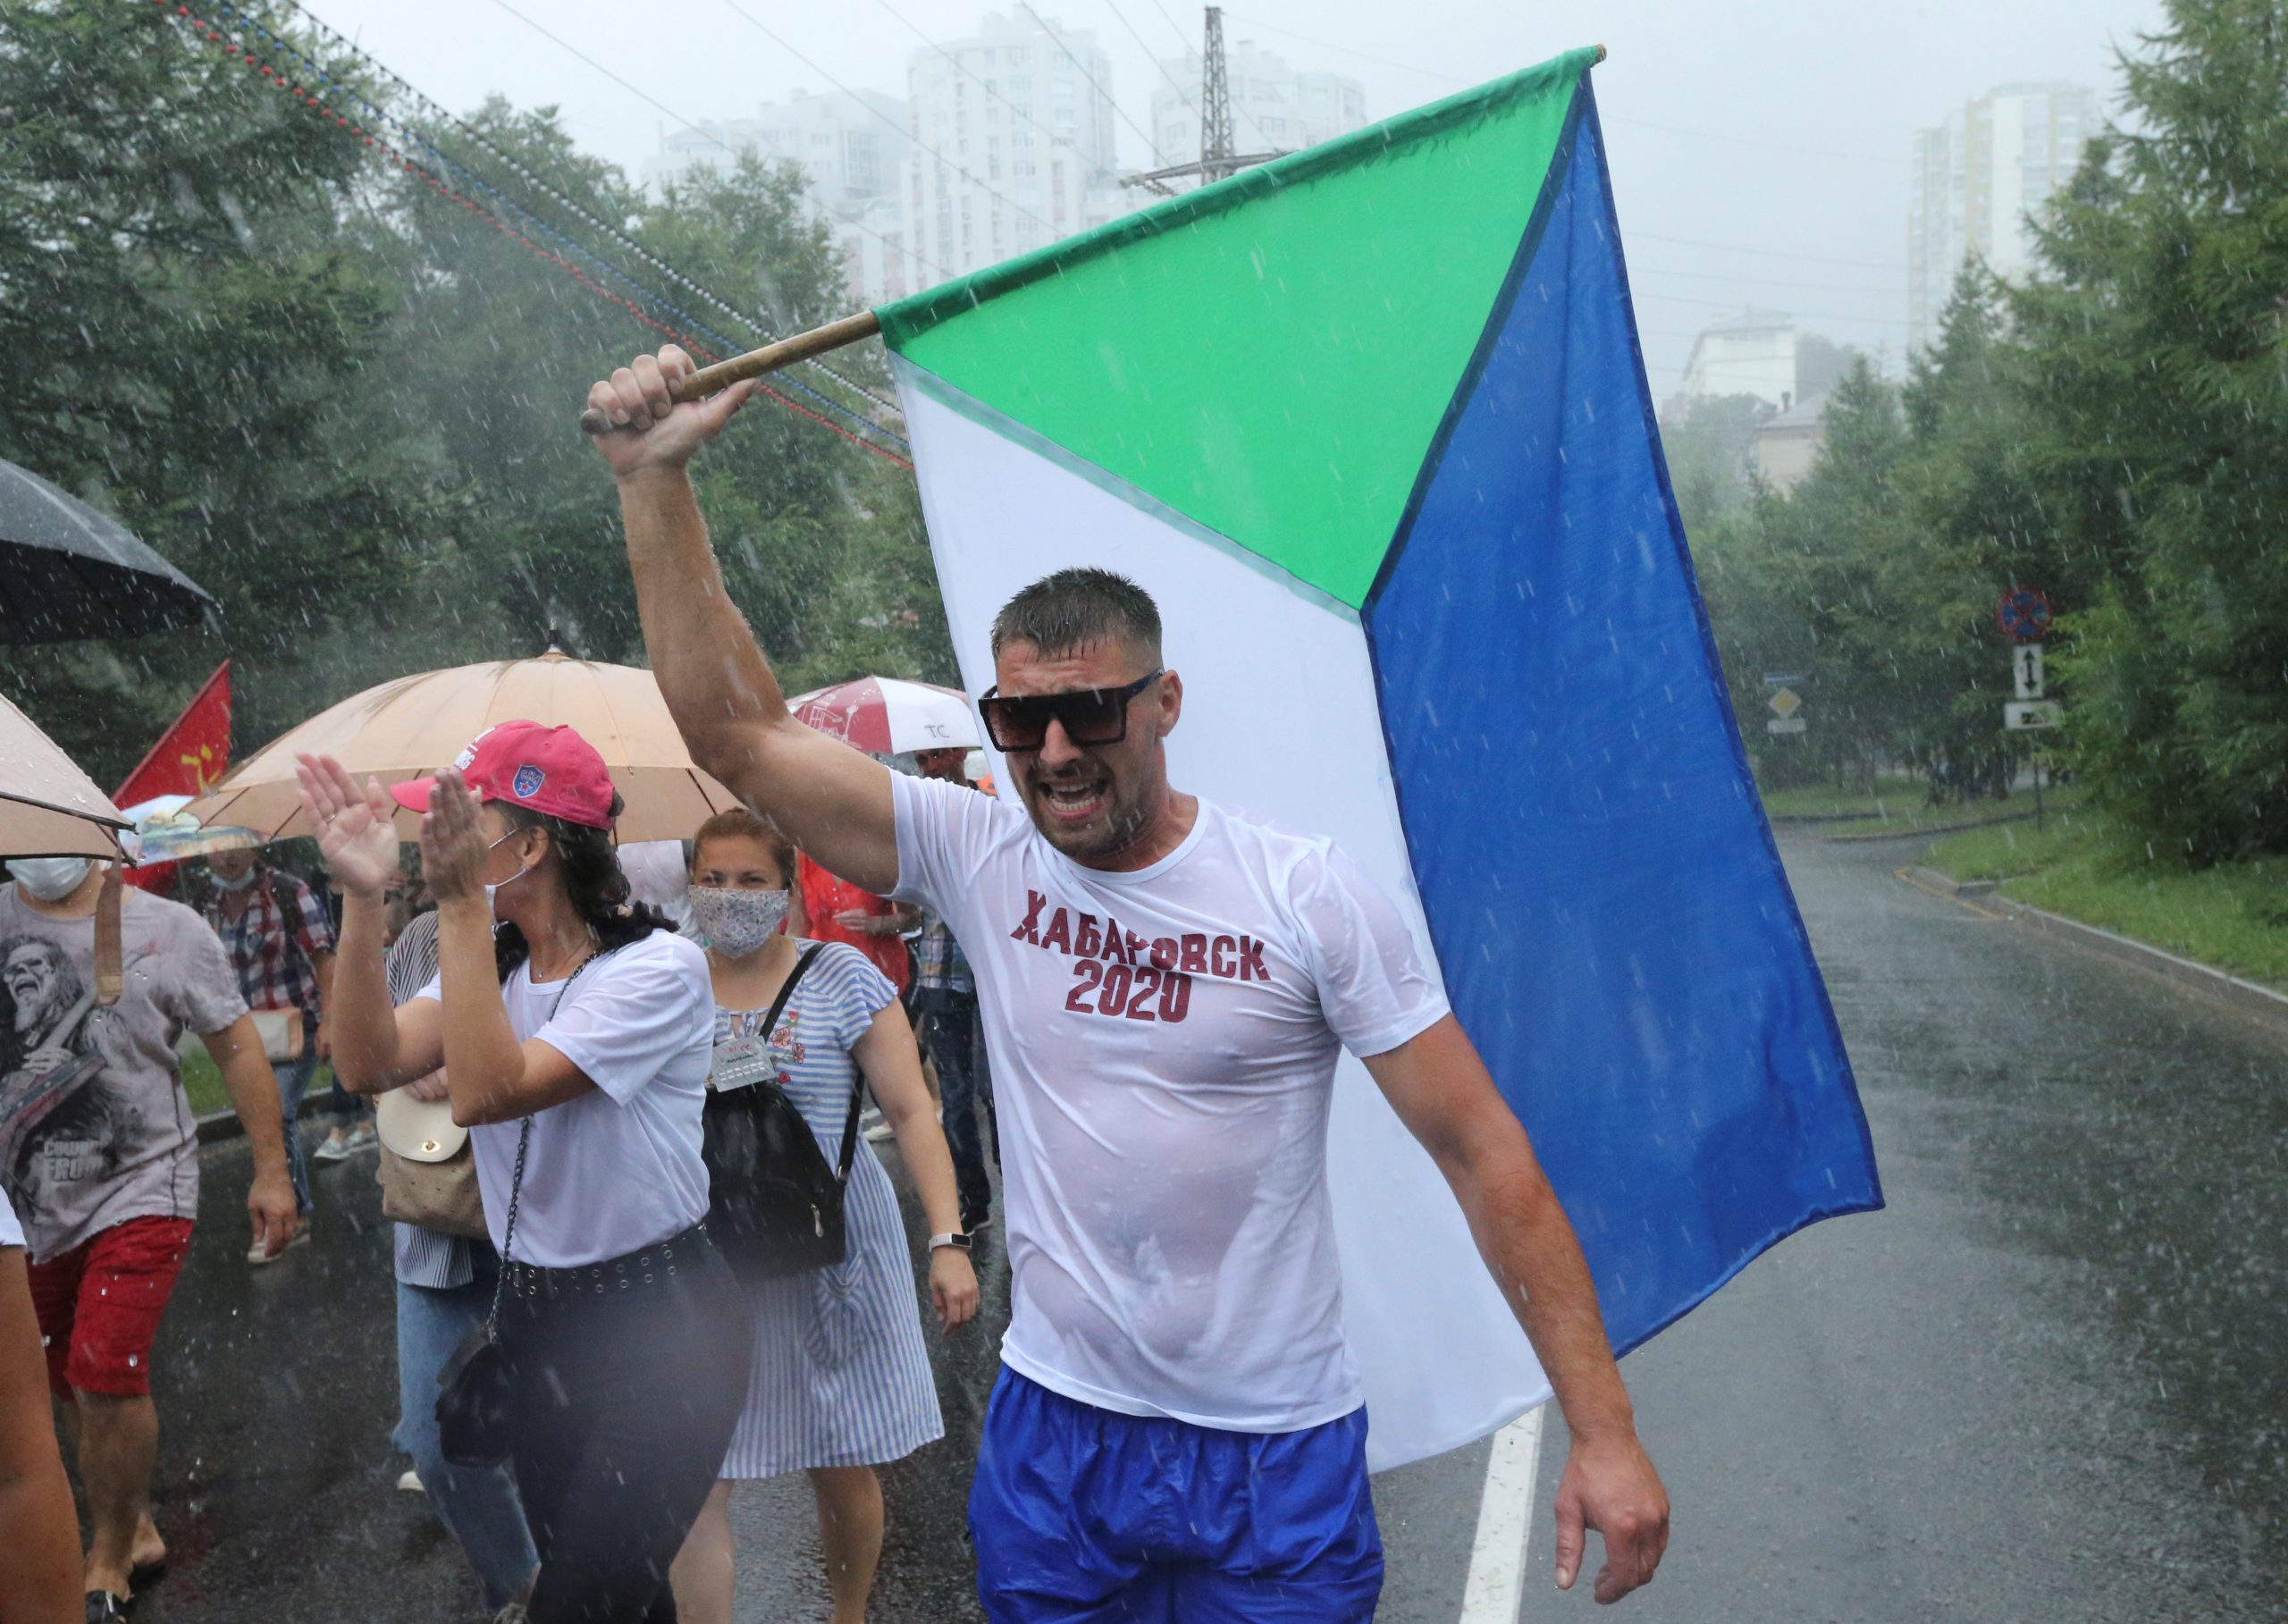 Некоторые протестующие даже не стали защищаться от дождя. Фото Evgenii Pereverzev/REUTERS/Scanpix/Leta